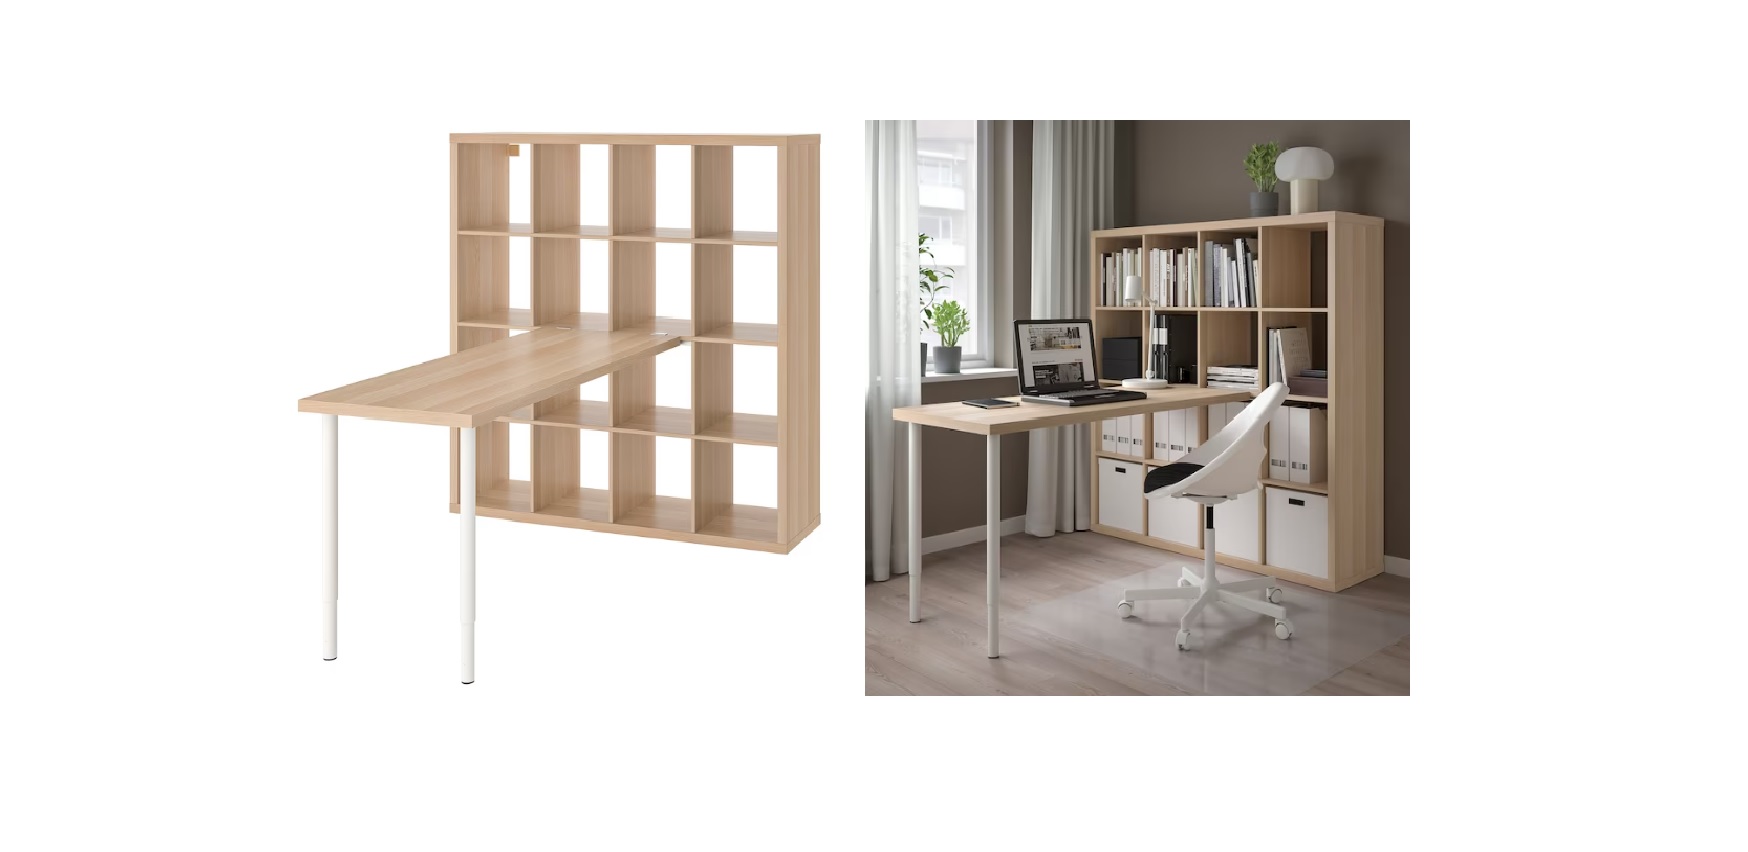 escritorios con estanterías son ideales para ahorrar espacio en una casa sin despacho